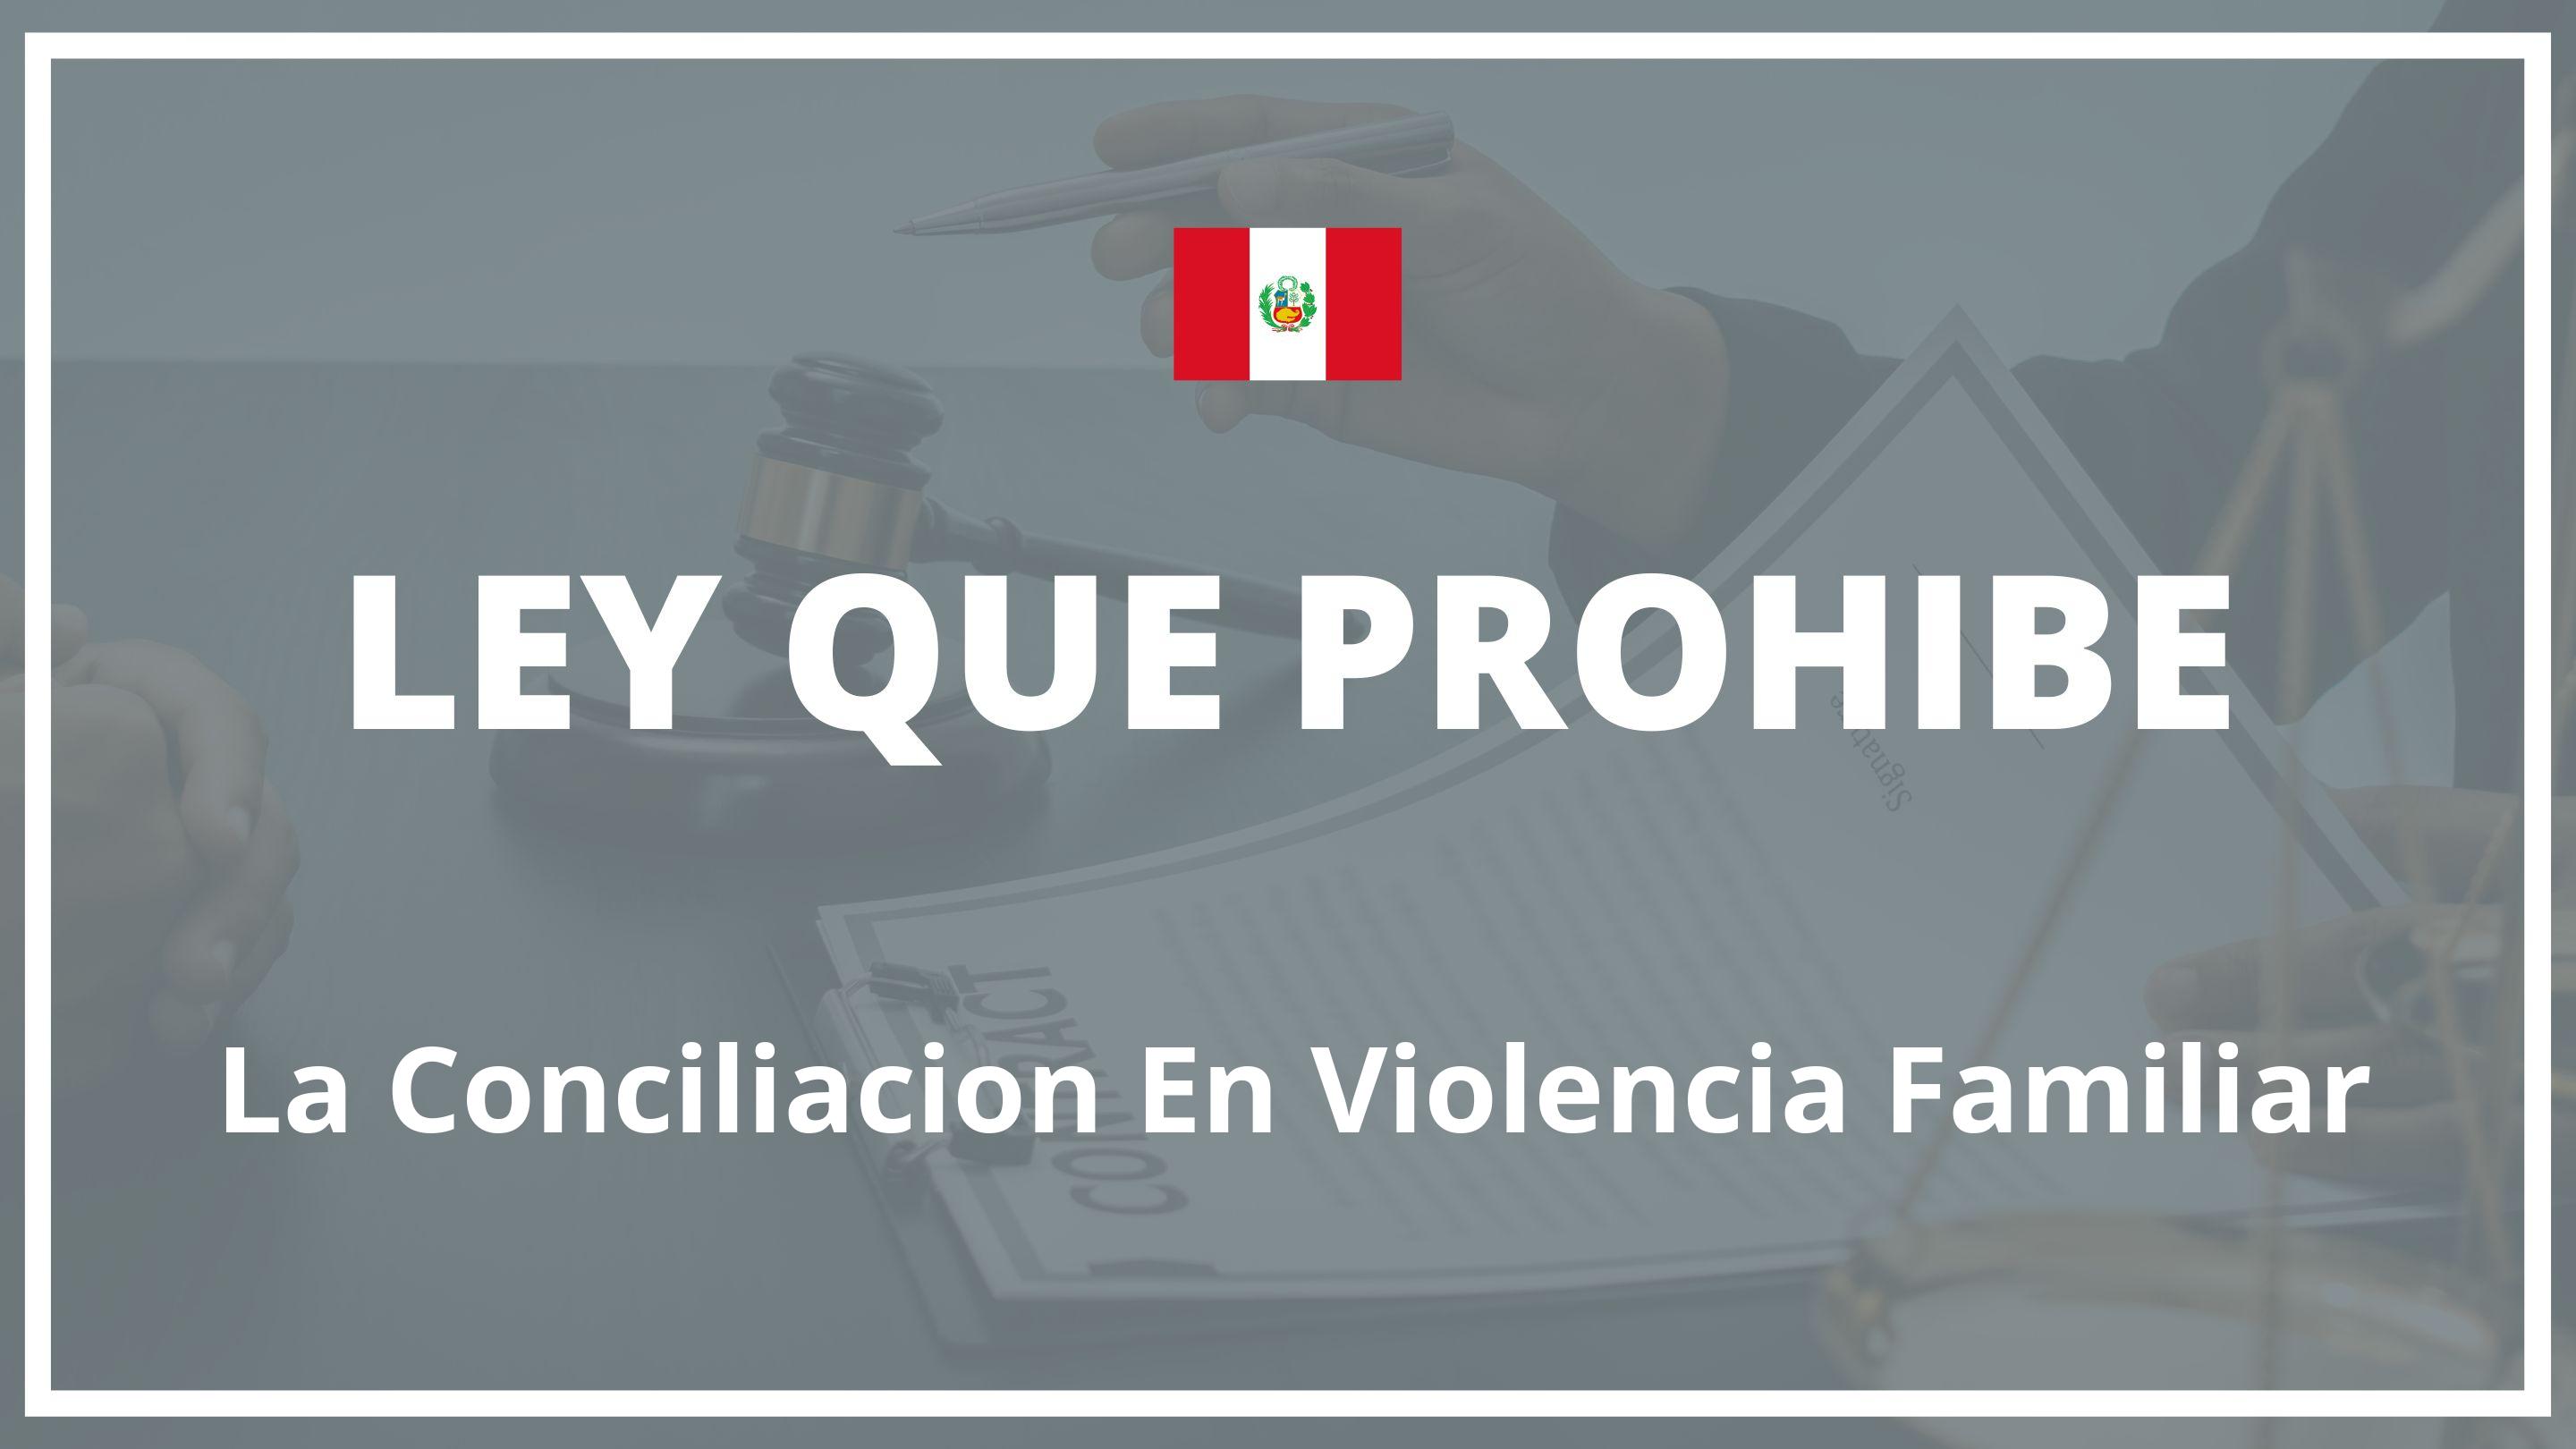 Ley que prohibe la conciliacion en violencia familiar Peru